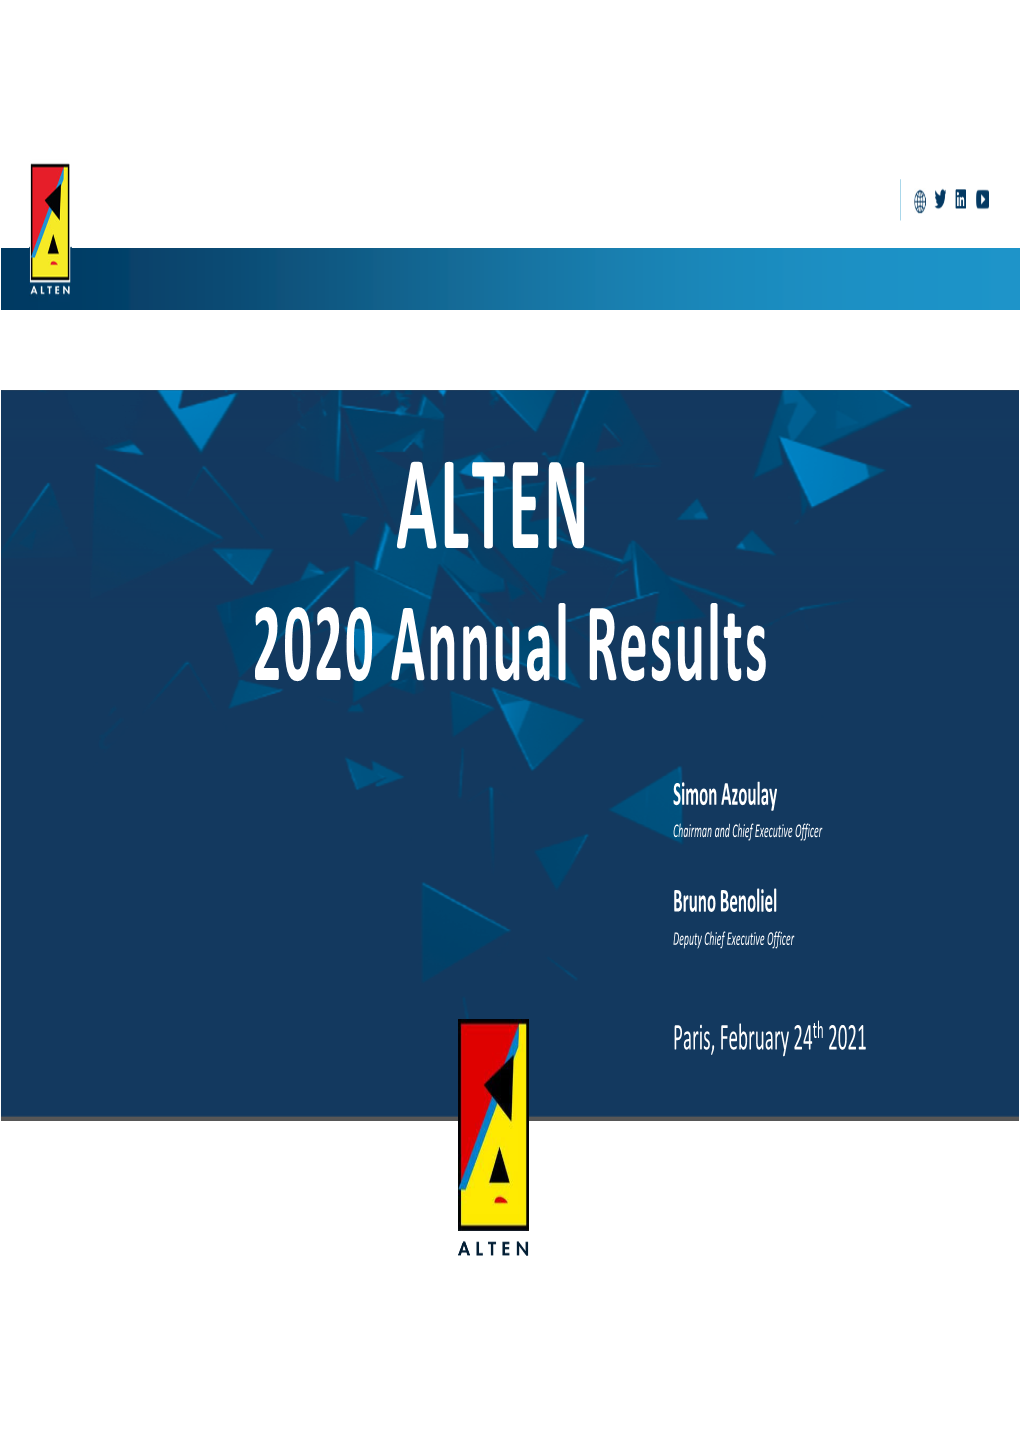 ALTEN Annual Results 2020